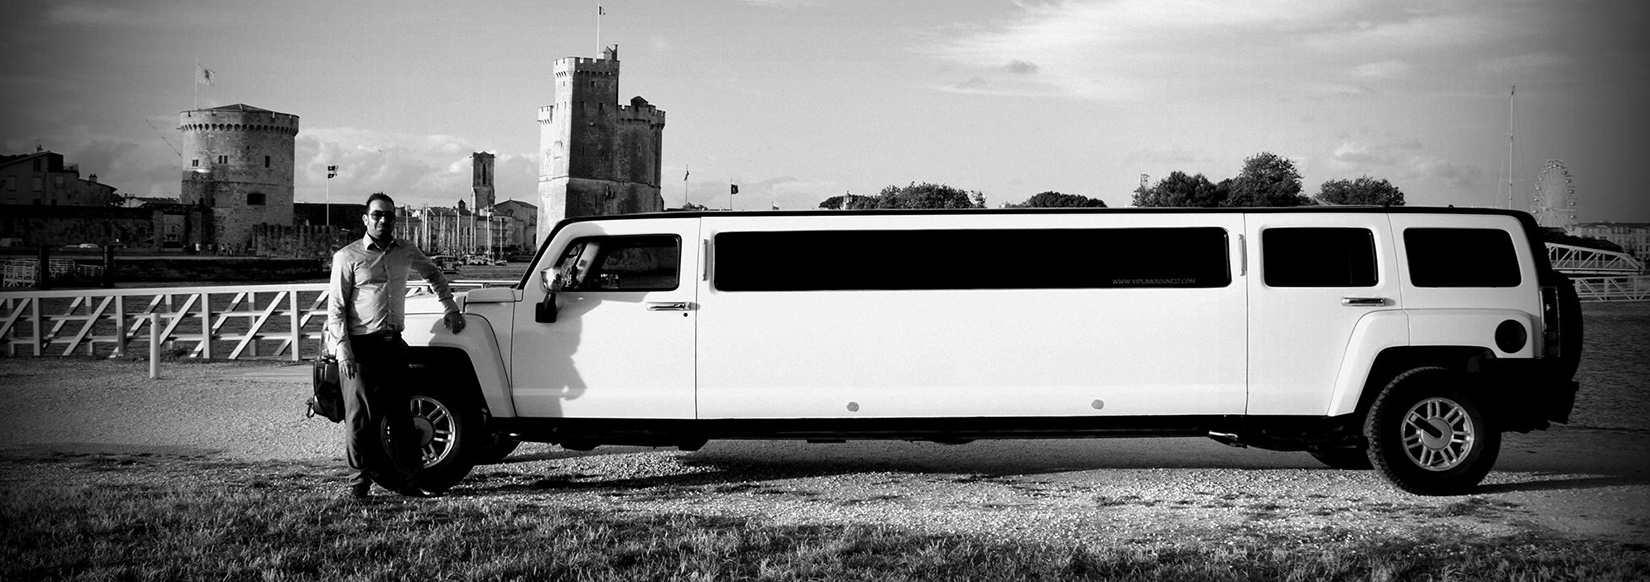 VIP Limousine 17 - Location de limousine en France